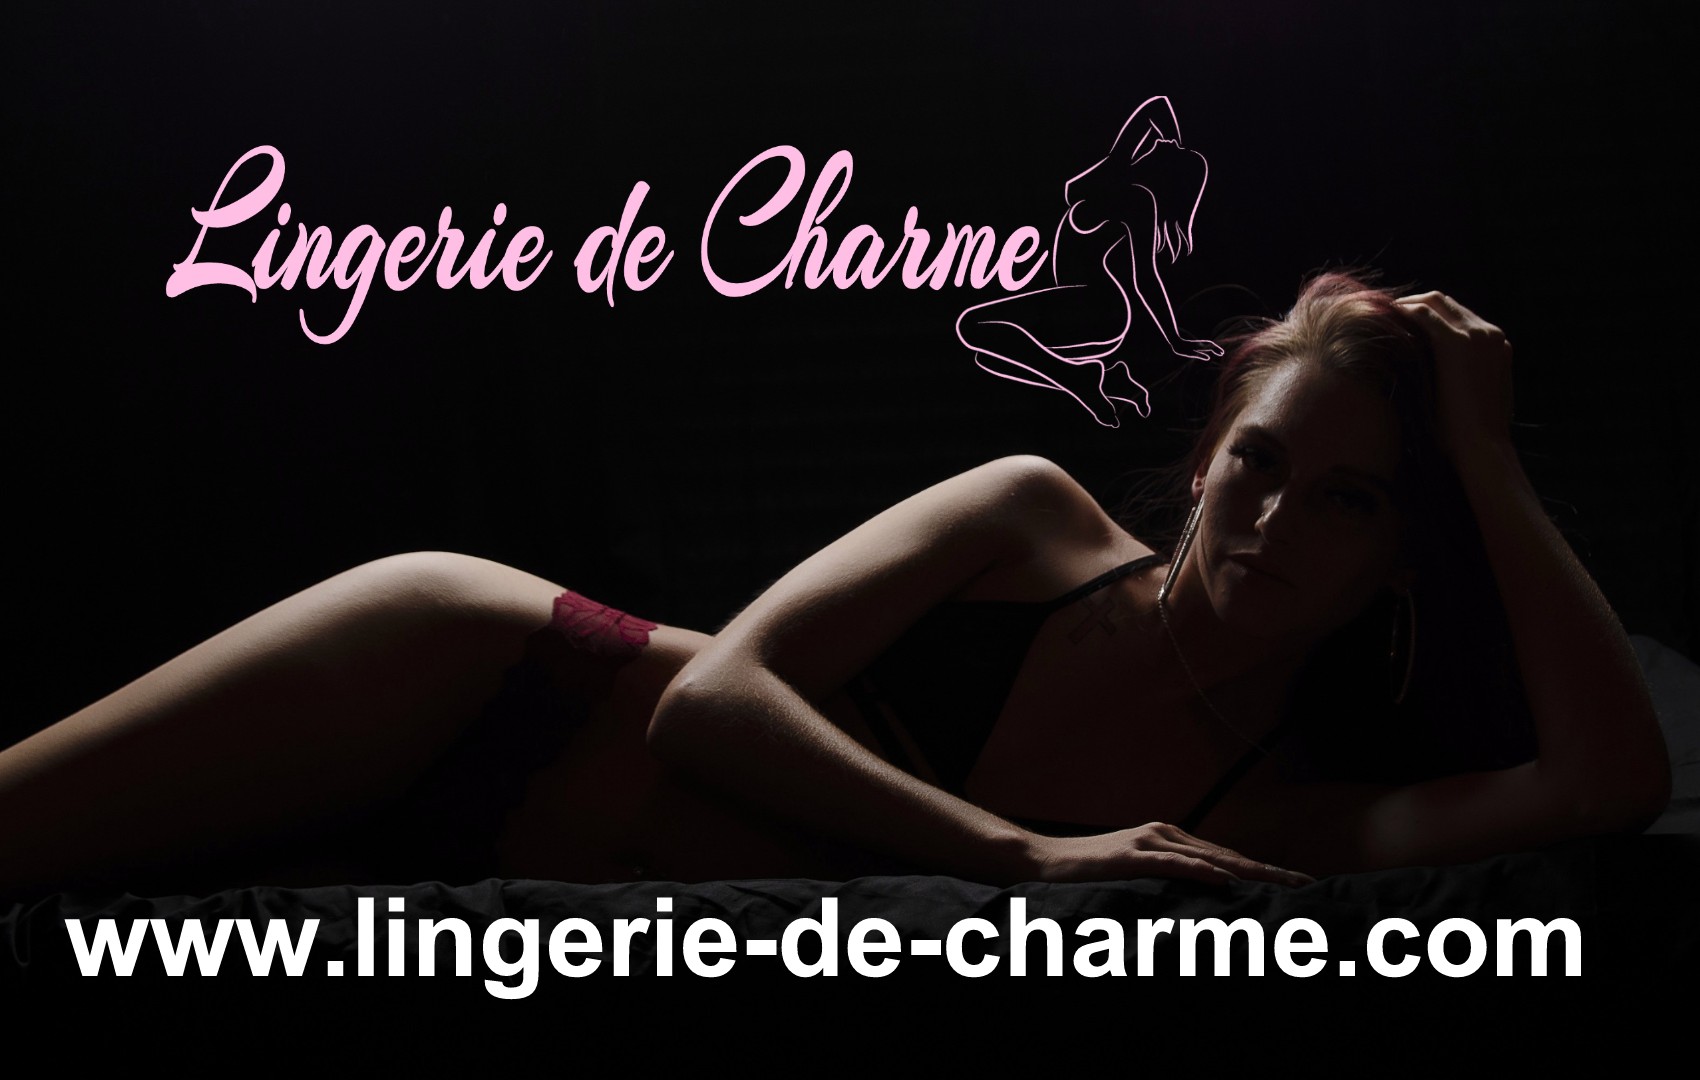 LINGERIE DE CHARME COURLAC 16 - LINGERIE SEXY COURLAC 16